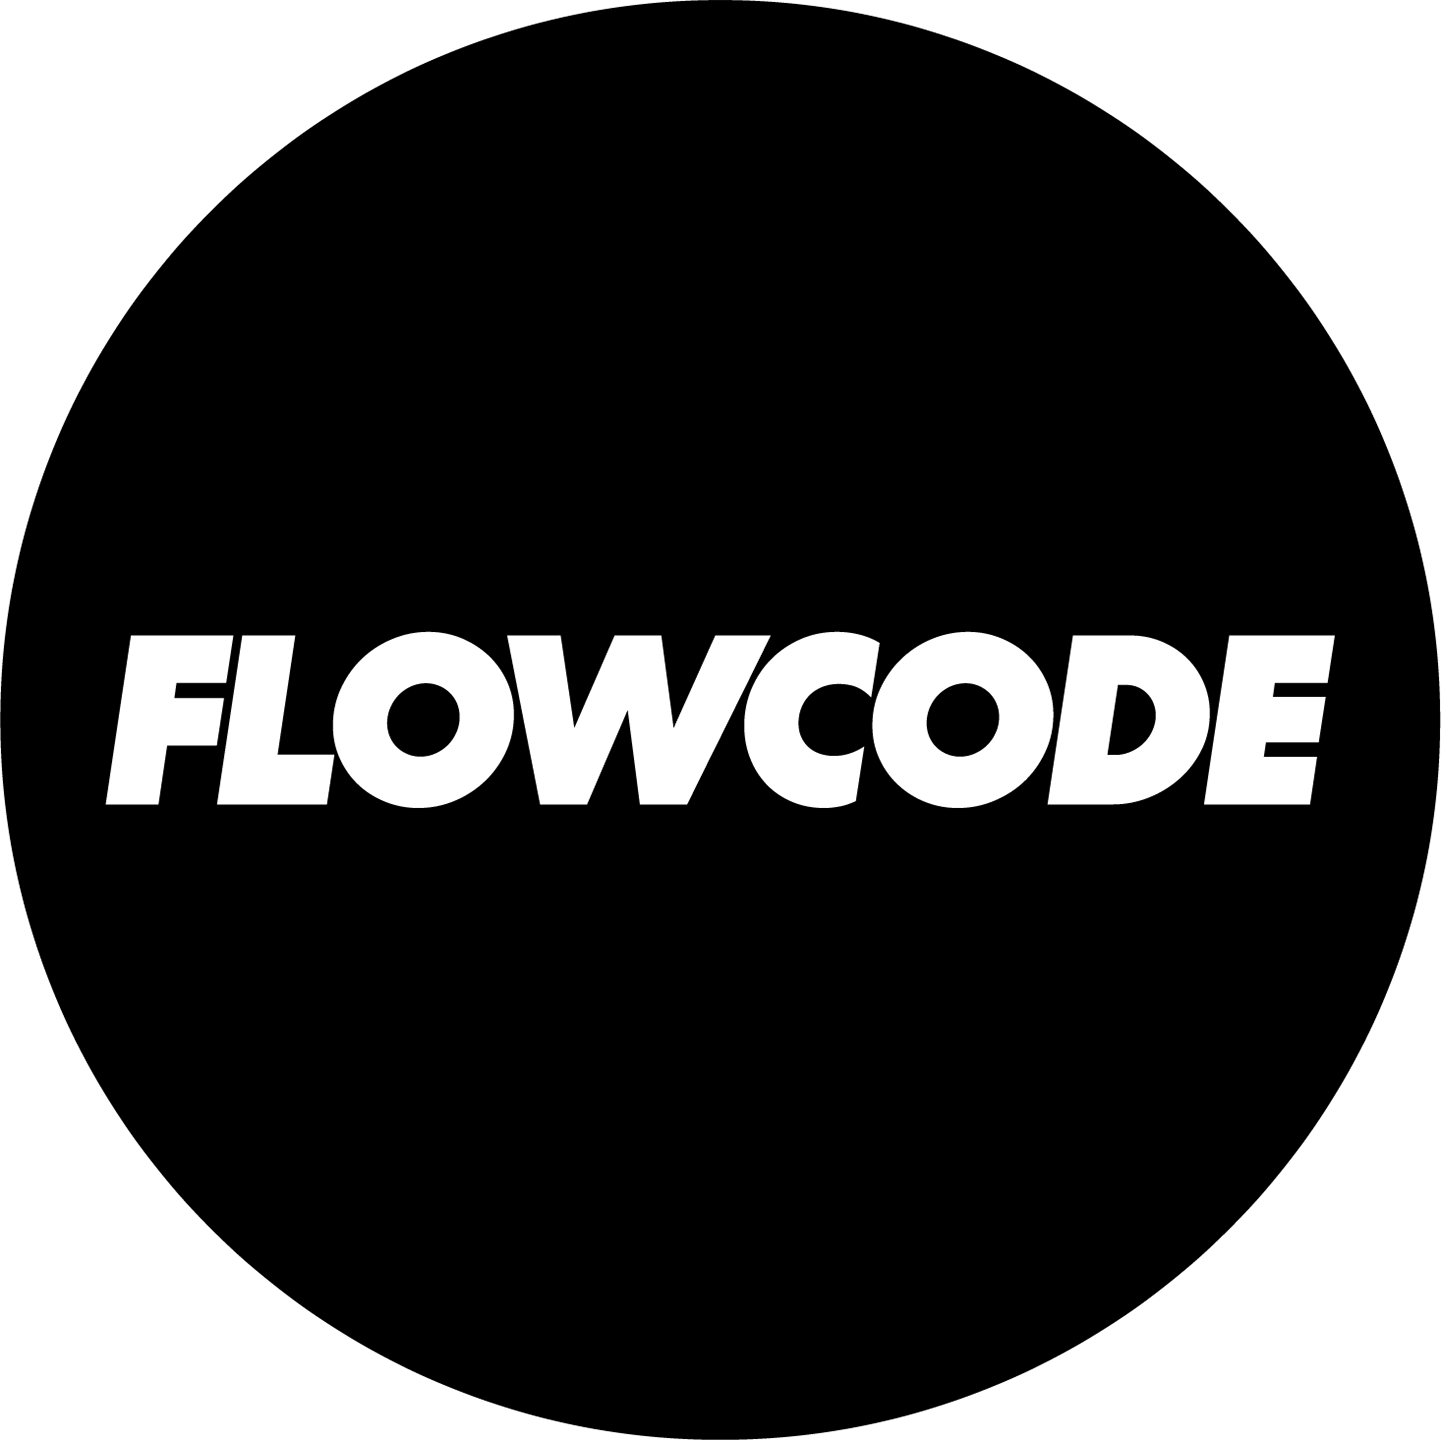 flowcode_black (1).png